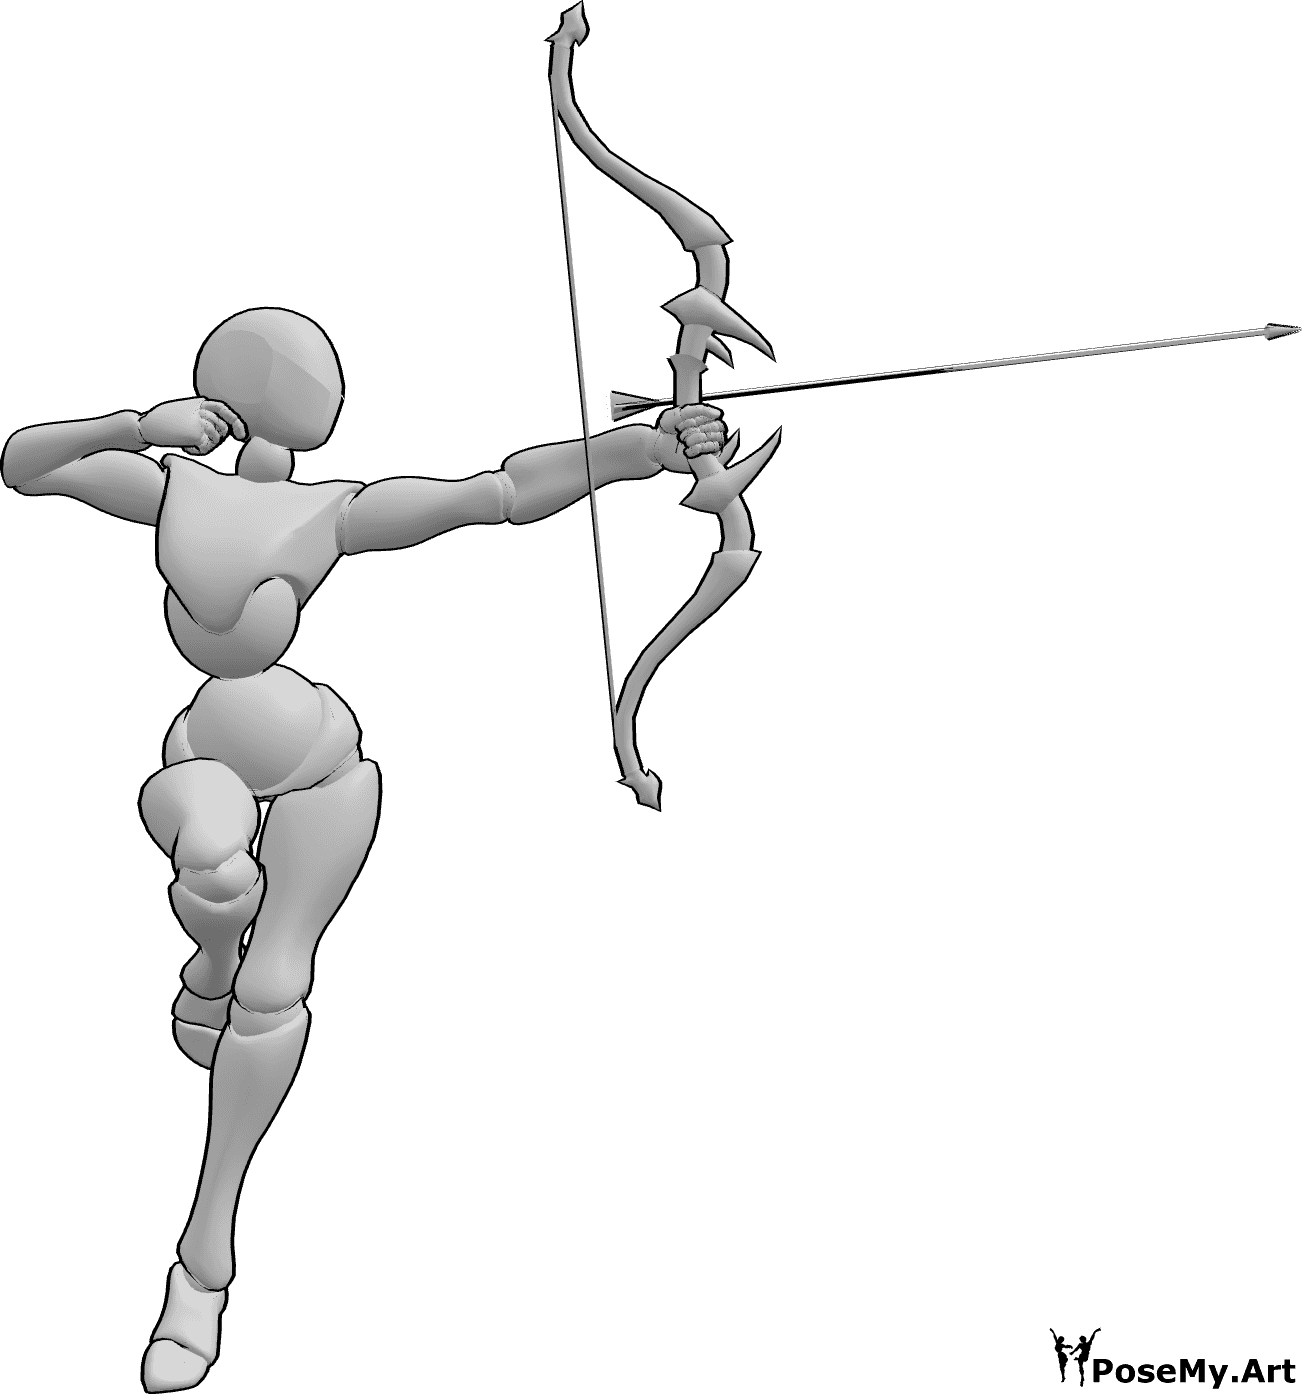 Best Archery Stance - Archery Guide